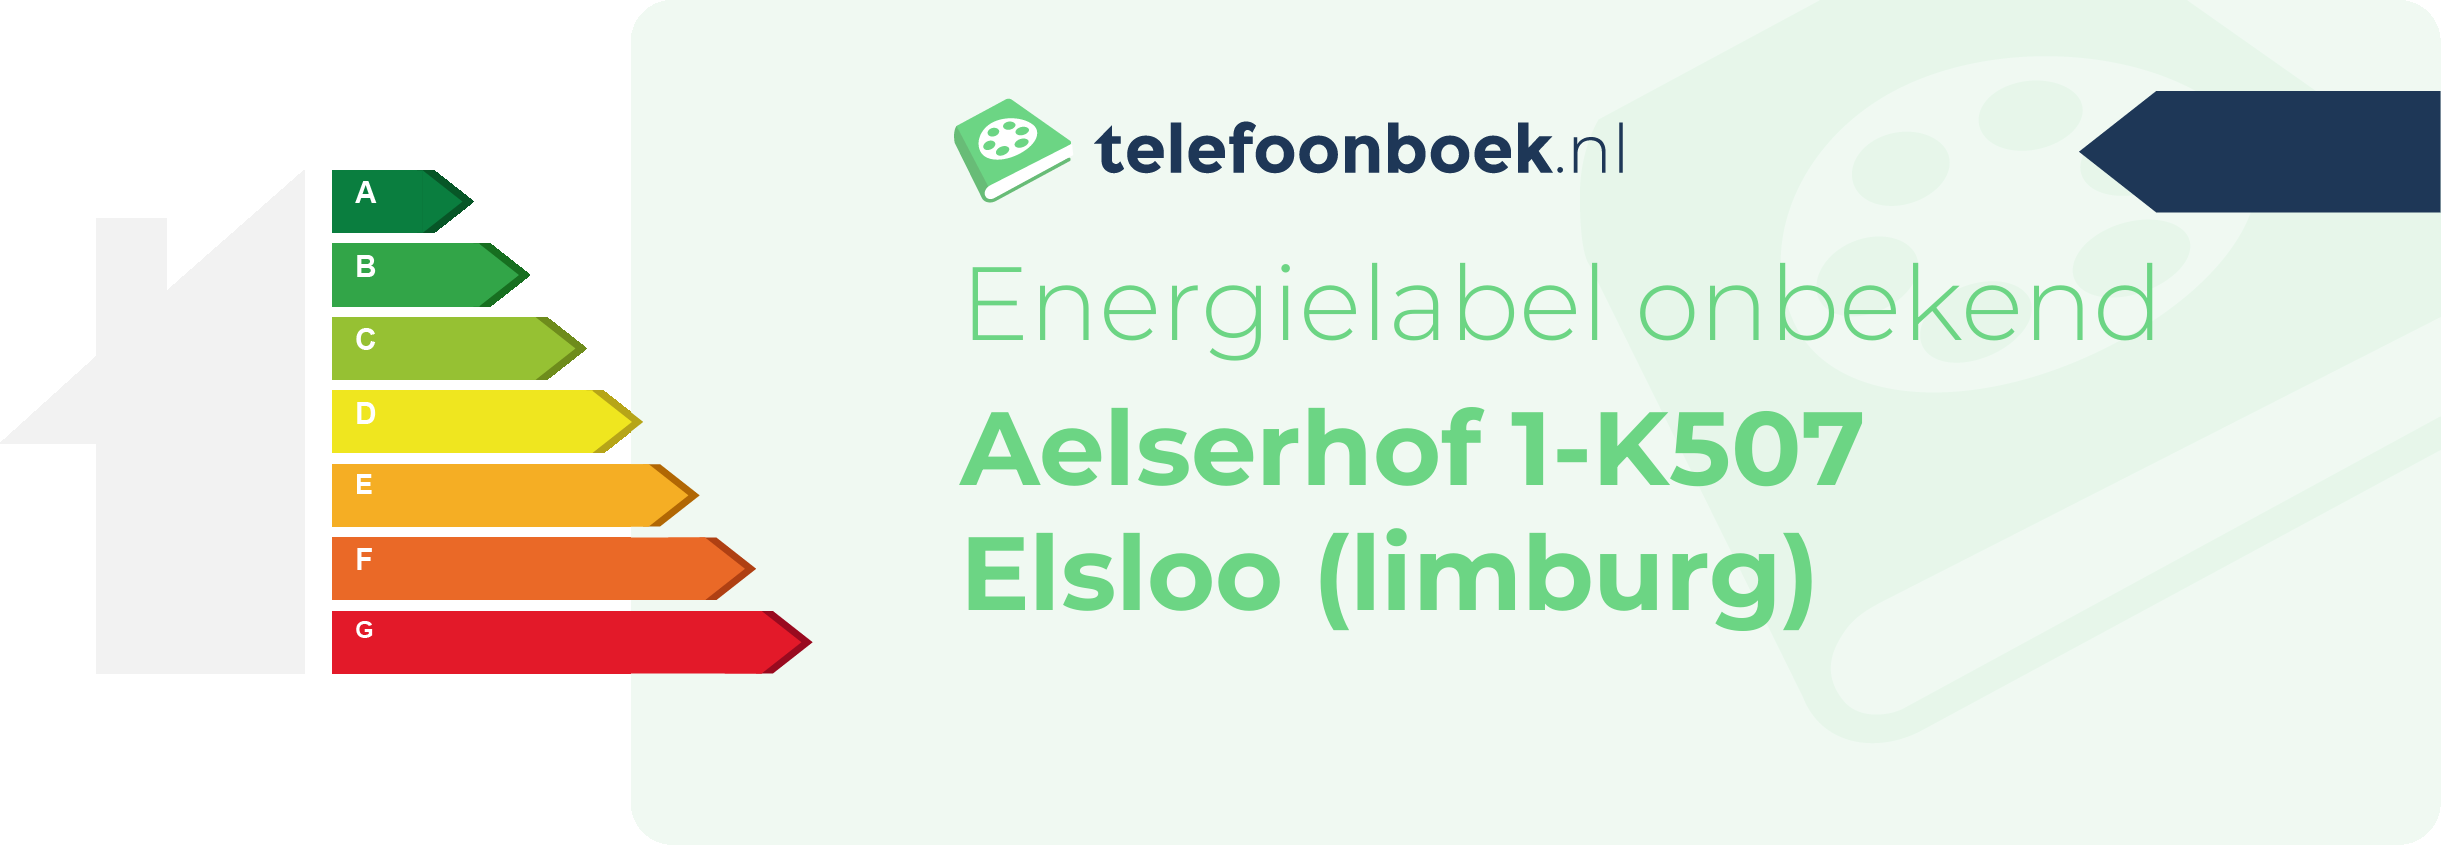 Energielabel Aelserhof 1-K507 Elsloo (Limburg)